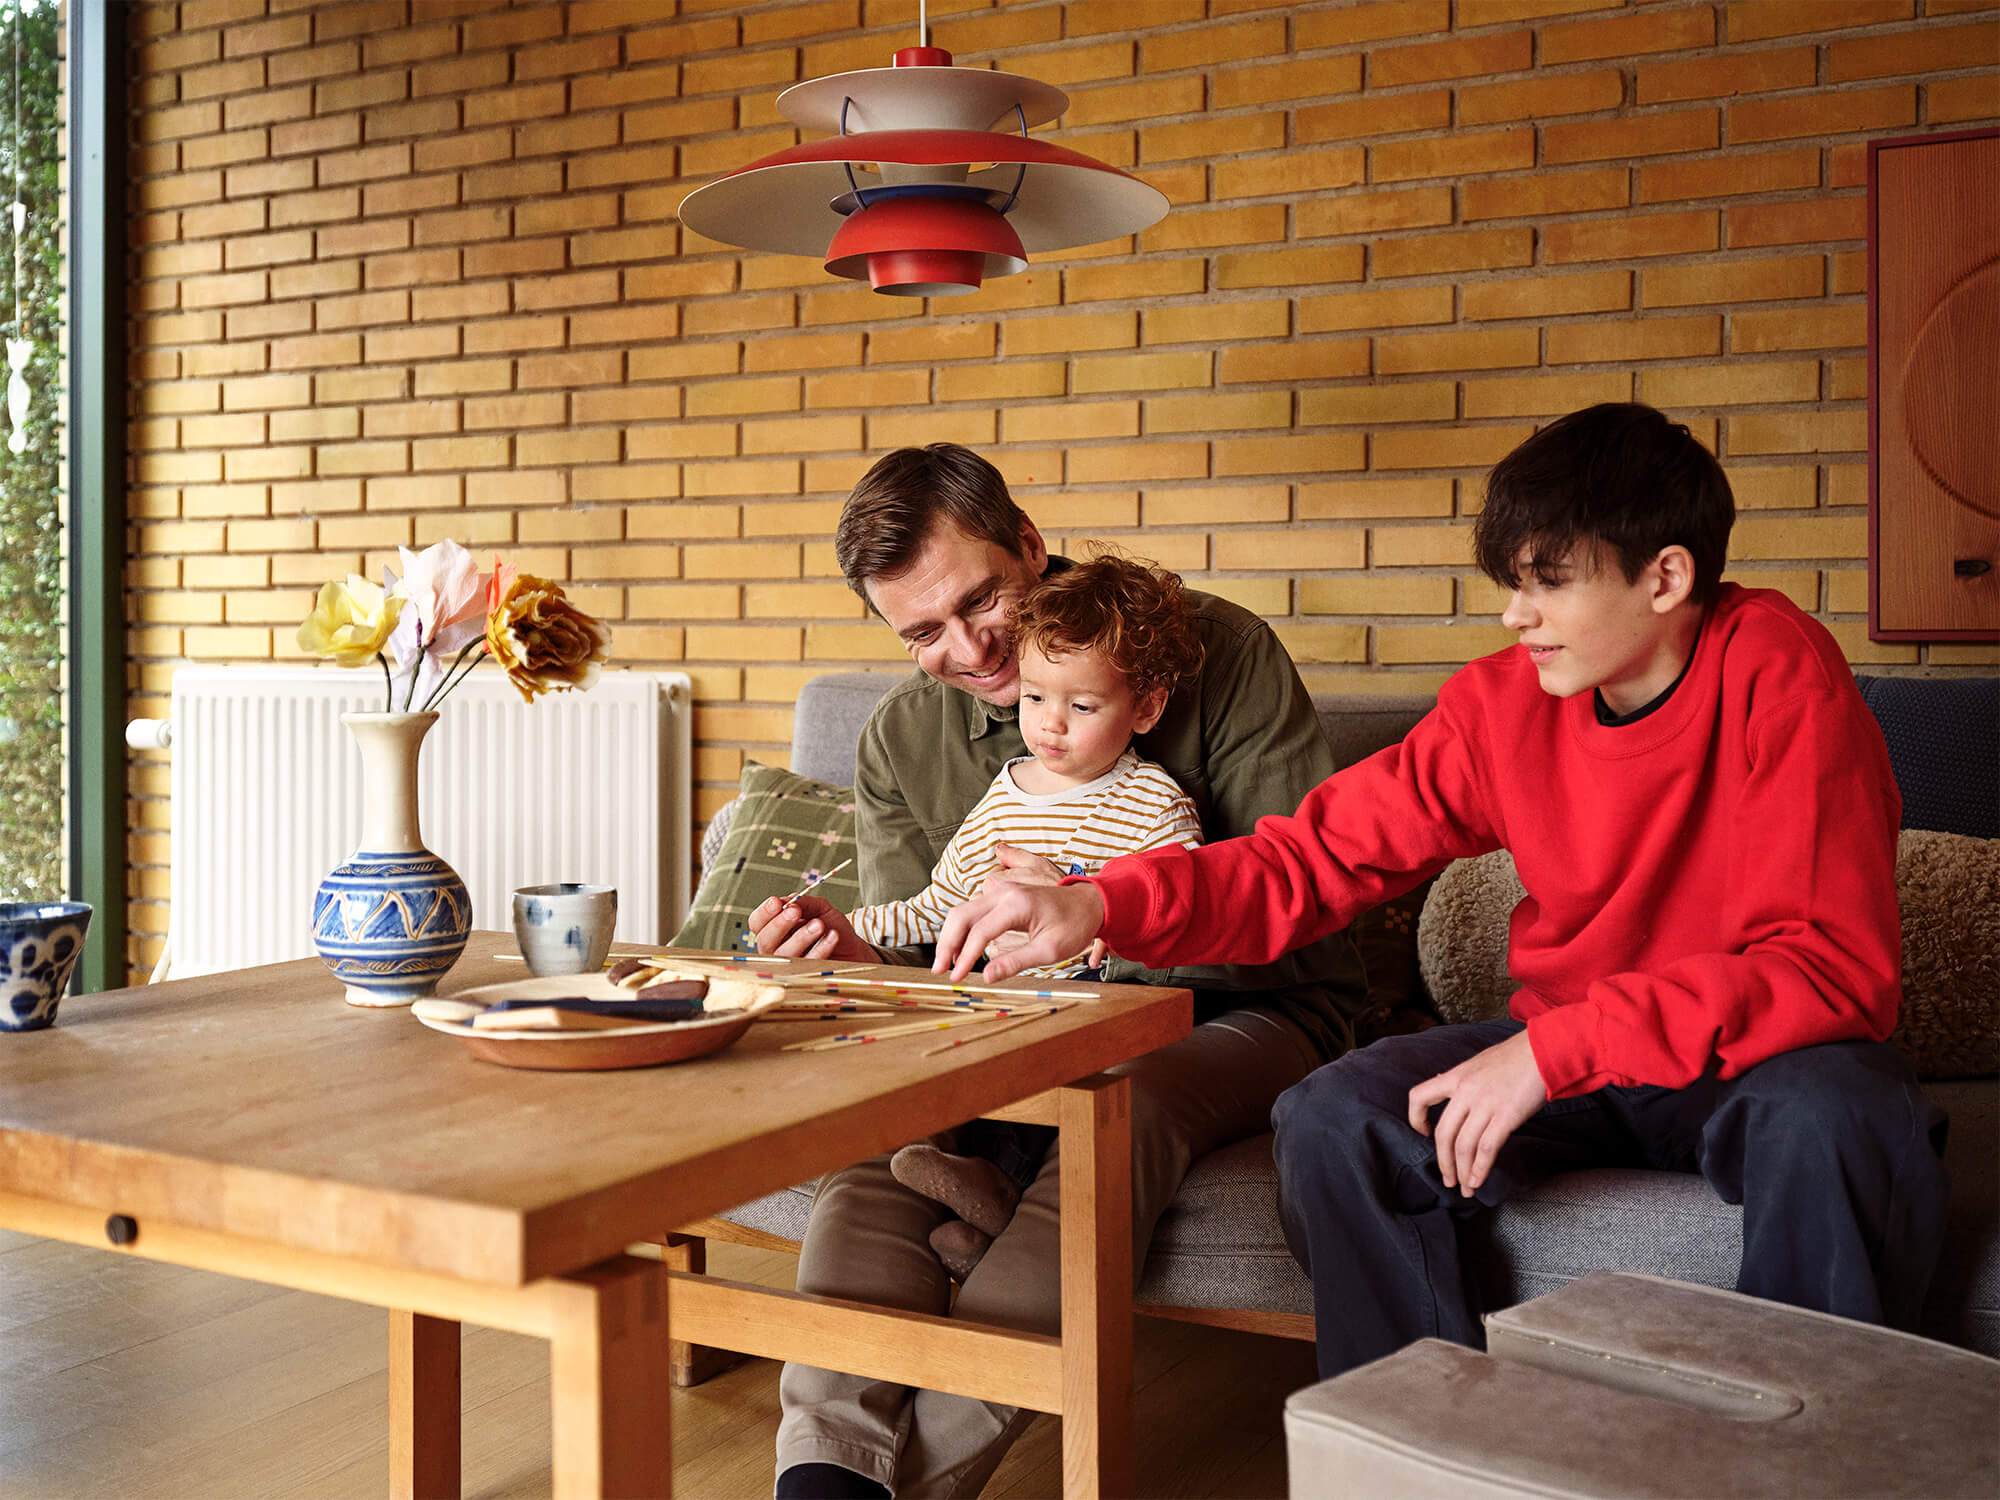 Radiator i en stue, med en voksen og to børn, der spiller mikado